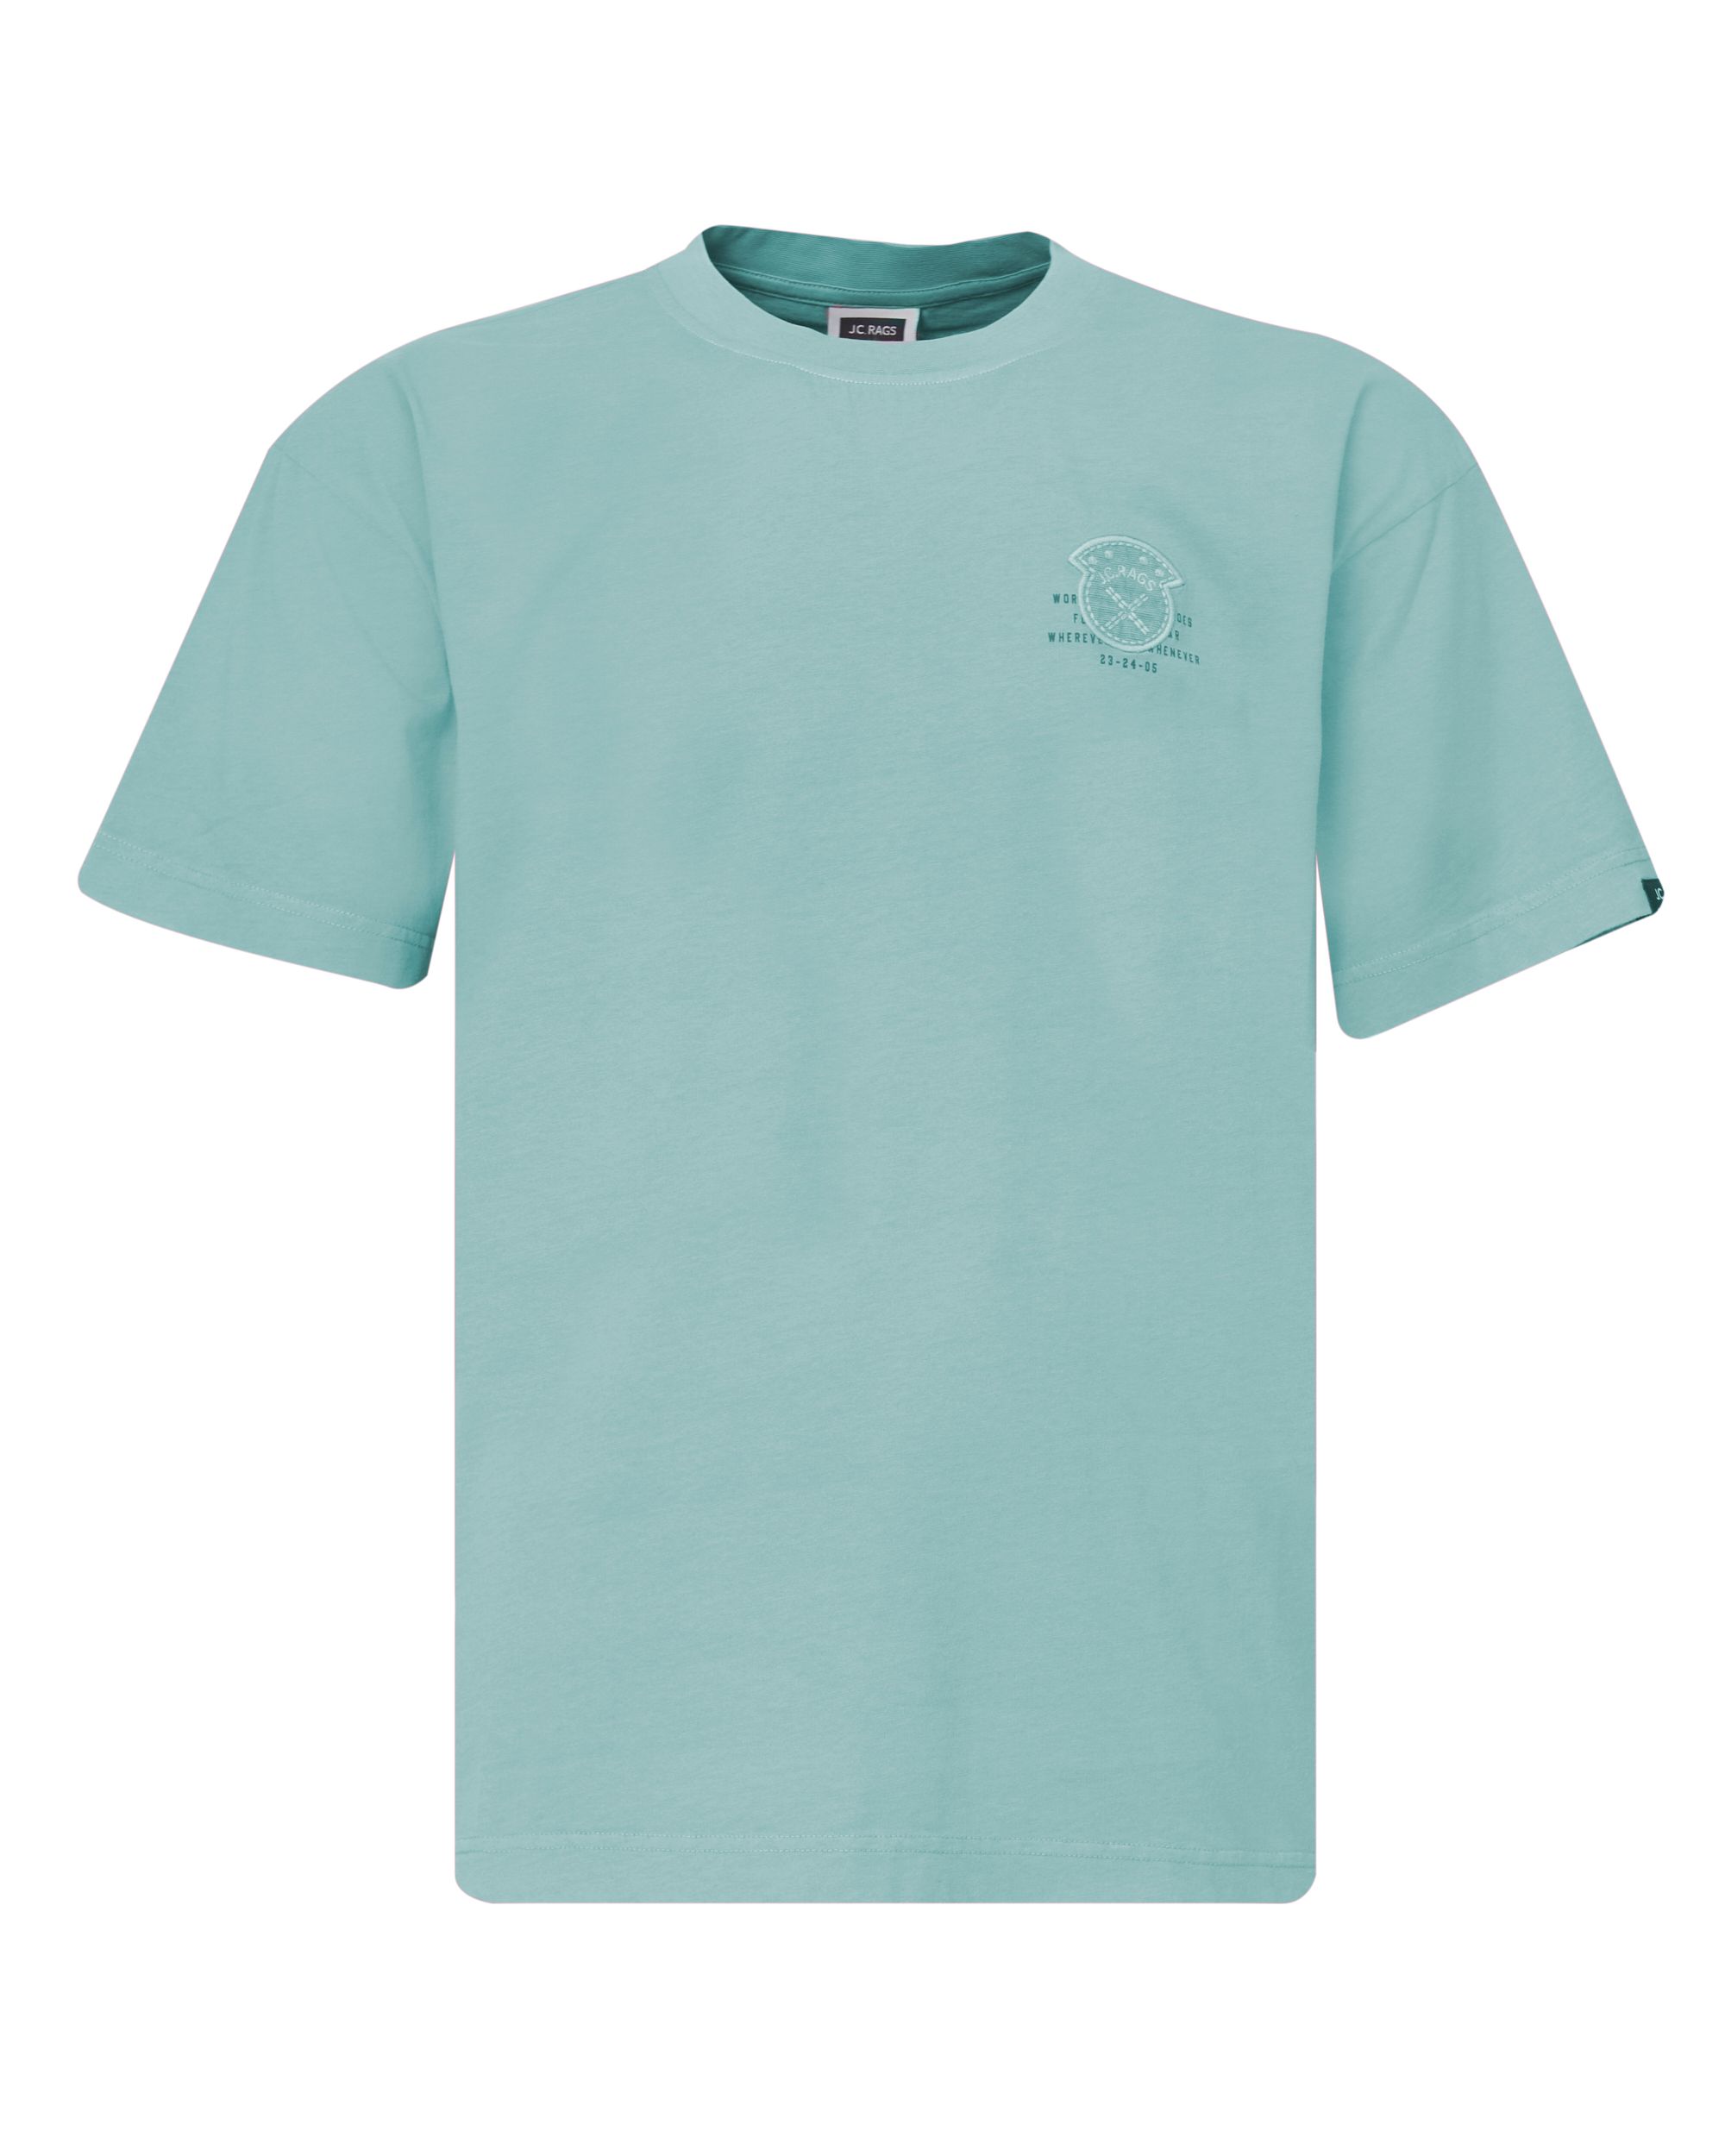 J.C. RAGS Ron T shirt KM Arctic 084755-002-L